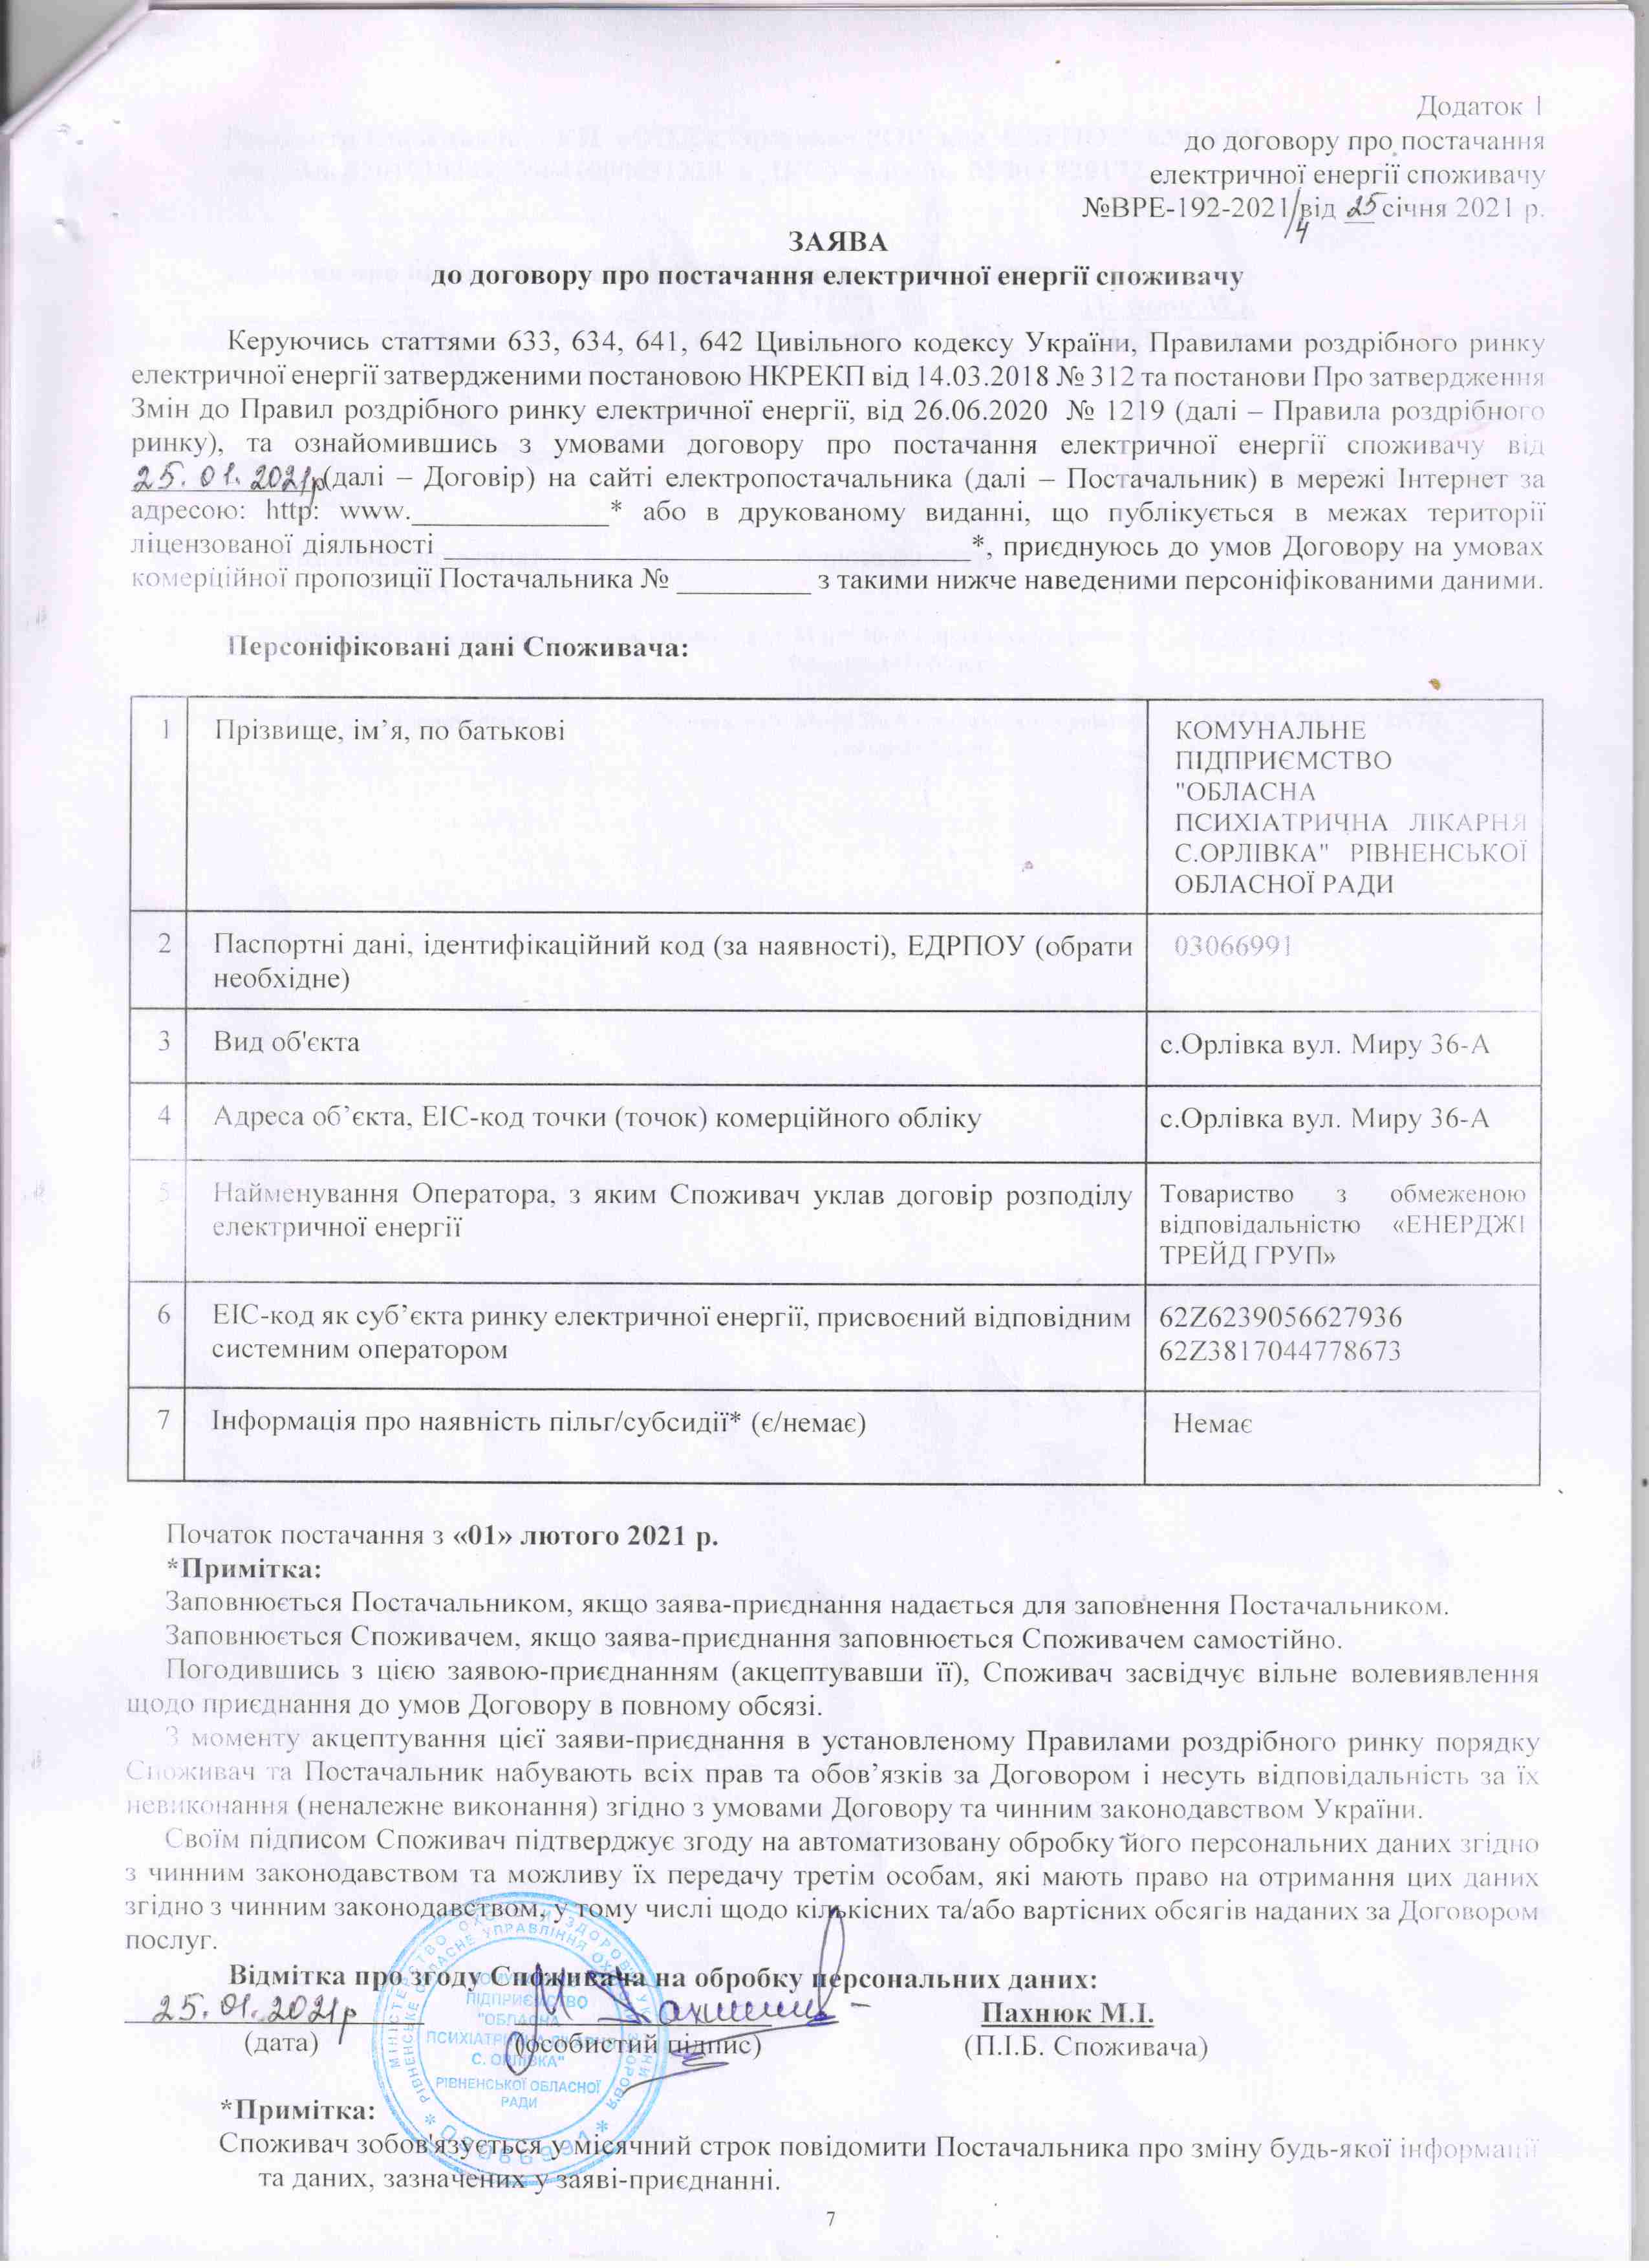 Договір №ВРЕ-192-2021/4 від 25.01.2021 р.